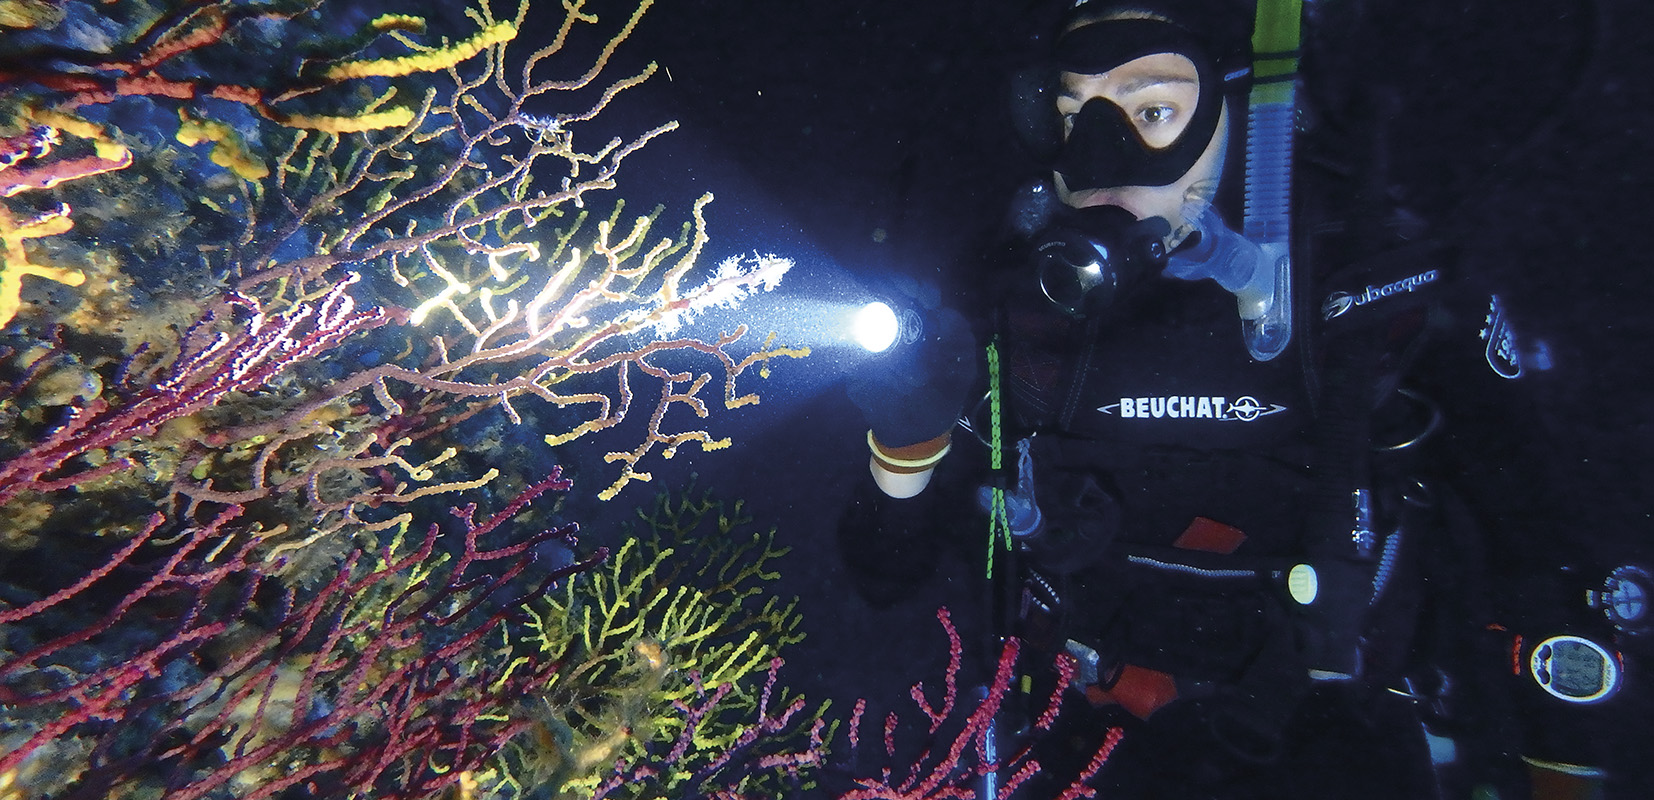 Buzo analizando los diferentes tipos de corales bajo el mar.